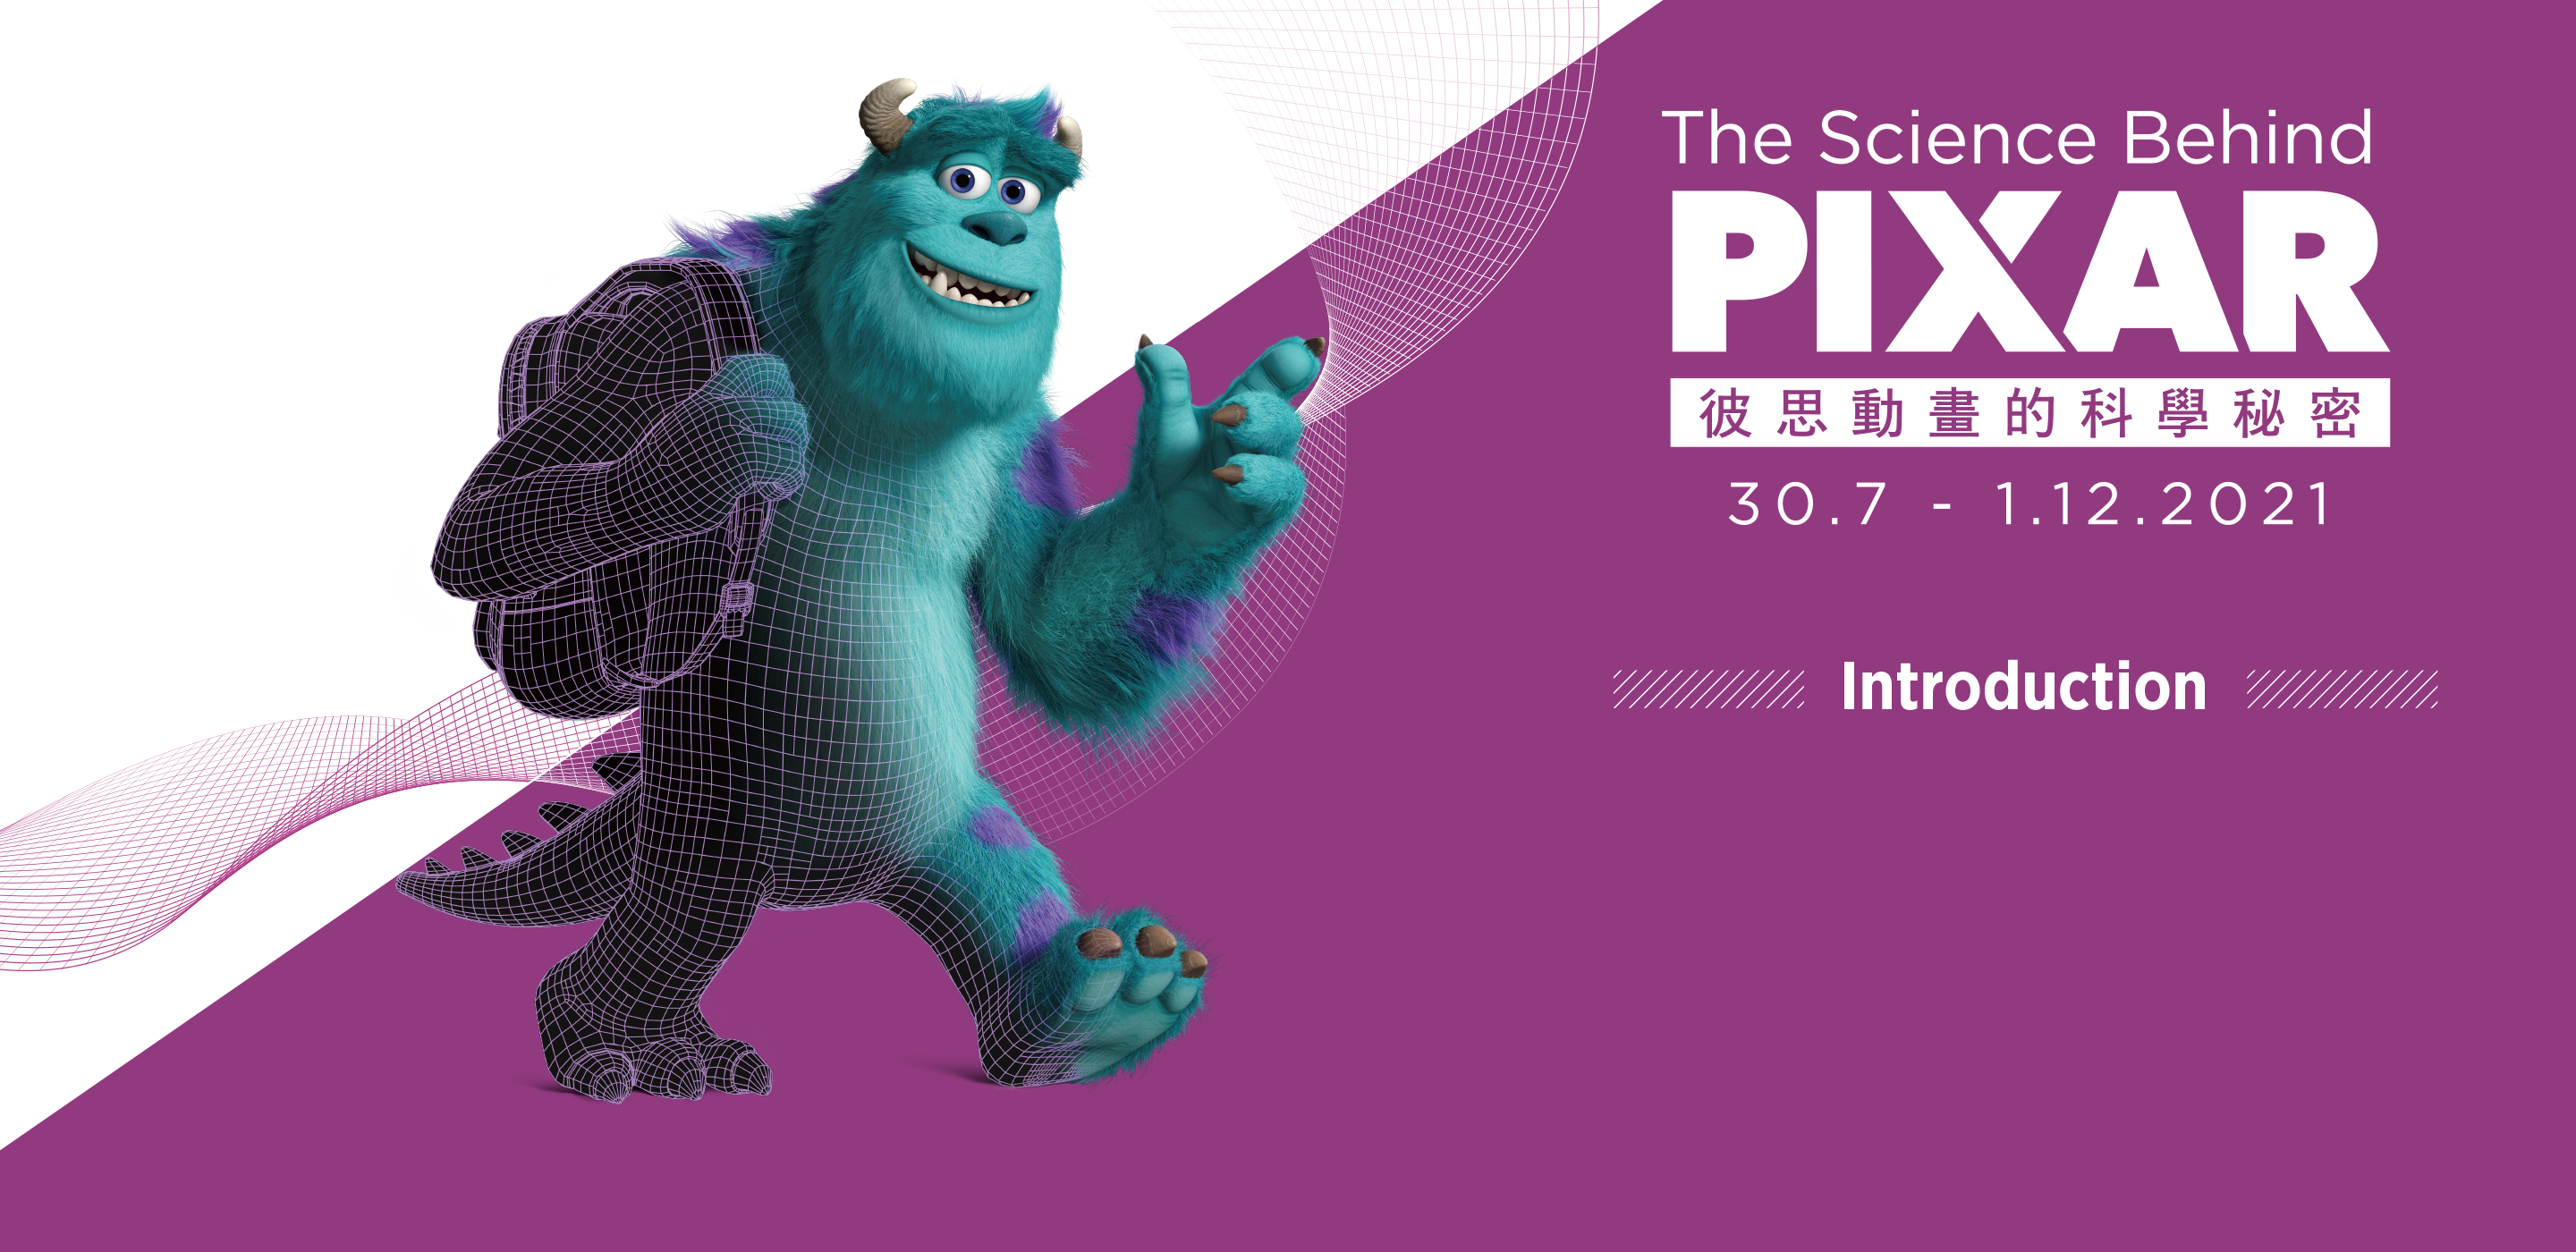 PIXAR 2021 | Introduction